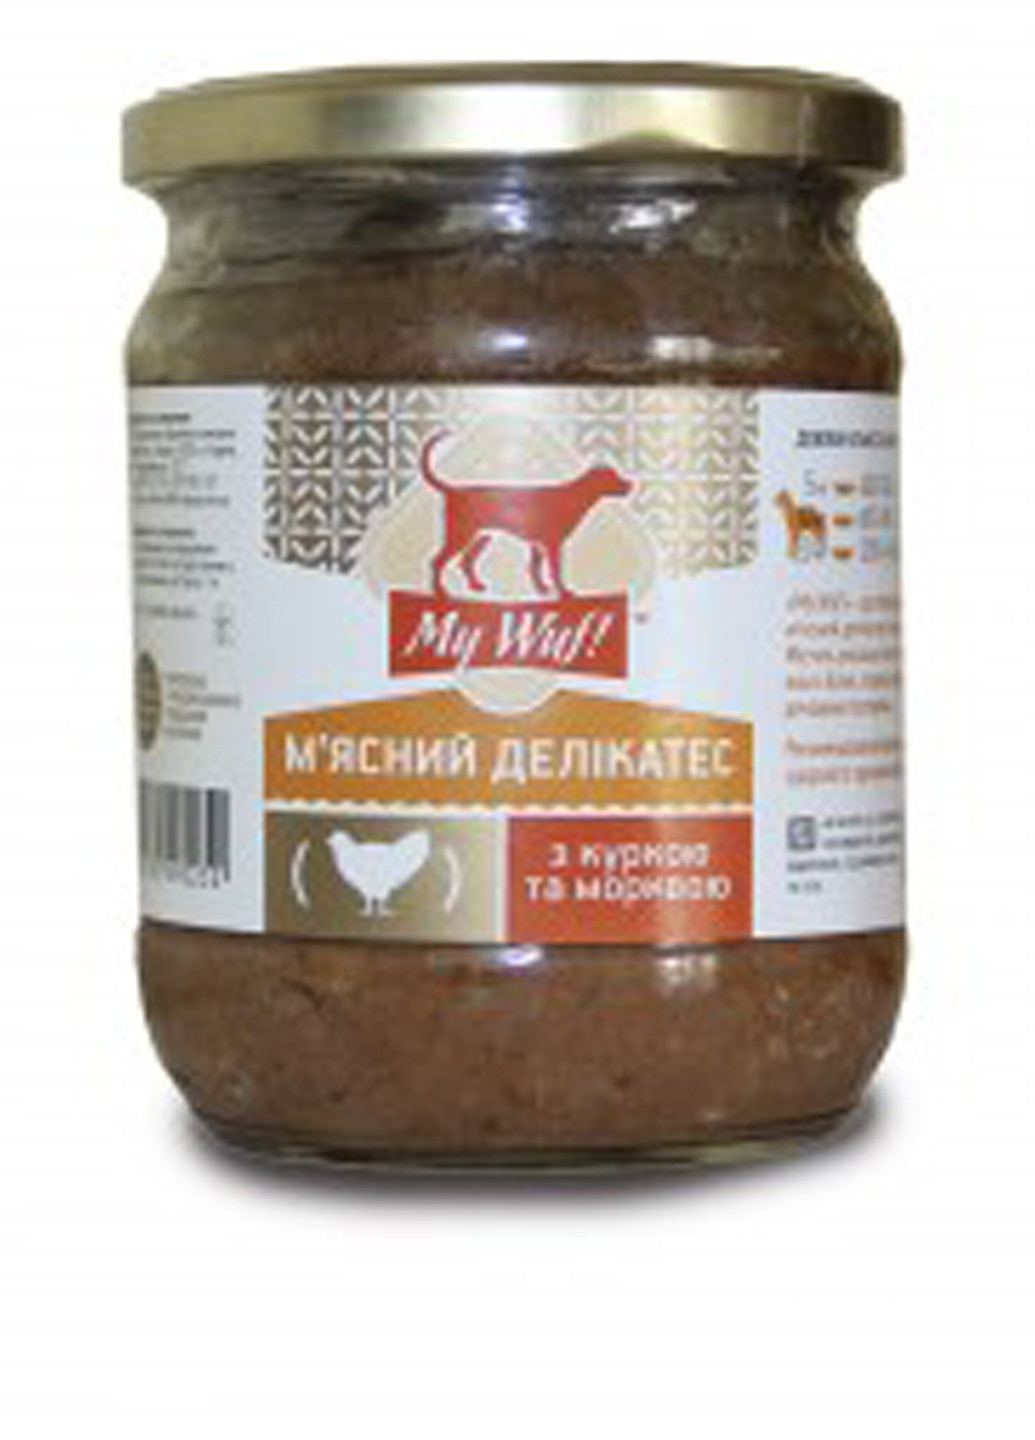 Мясные деликатесы для собак (курица, морковь), 500 г My WUF (17033898)